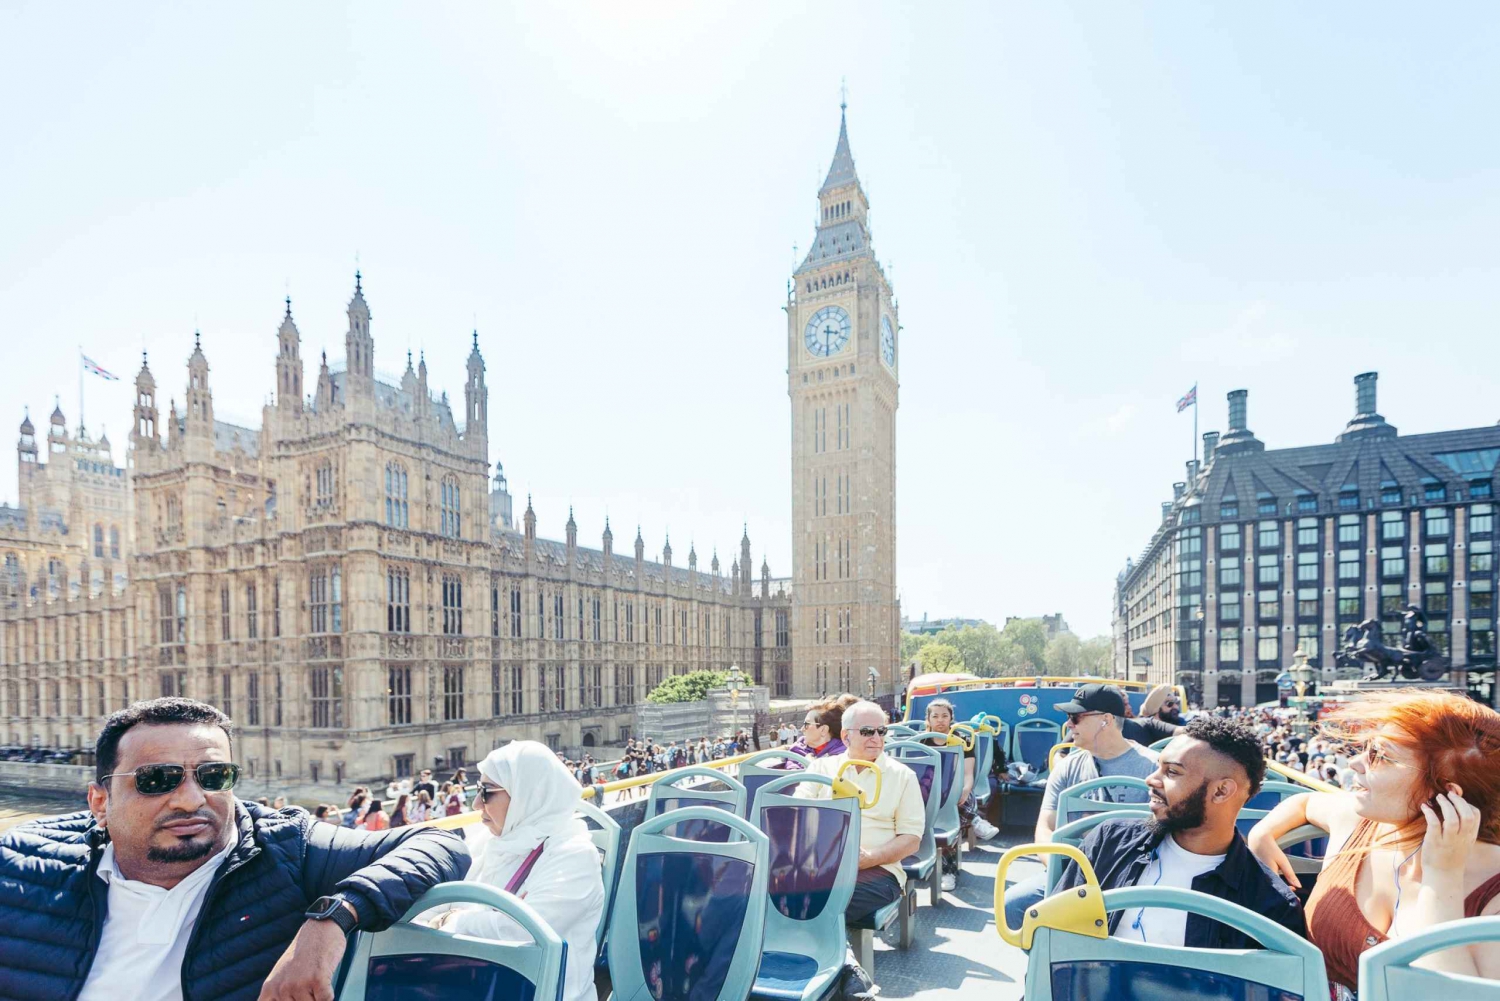 Londyn: Tootbus London Discovery Wycieczka autobusowa hop-on hop-off